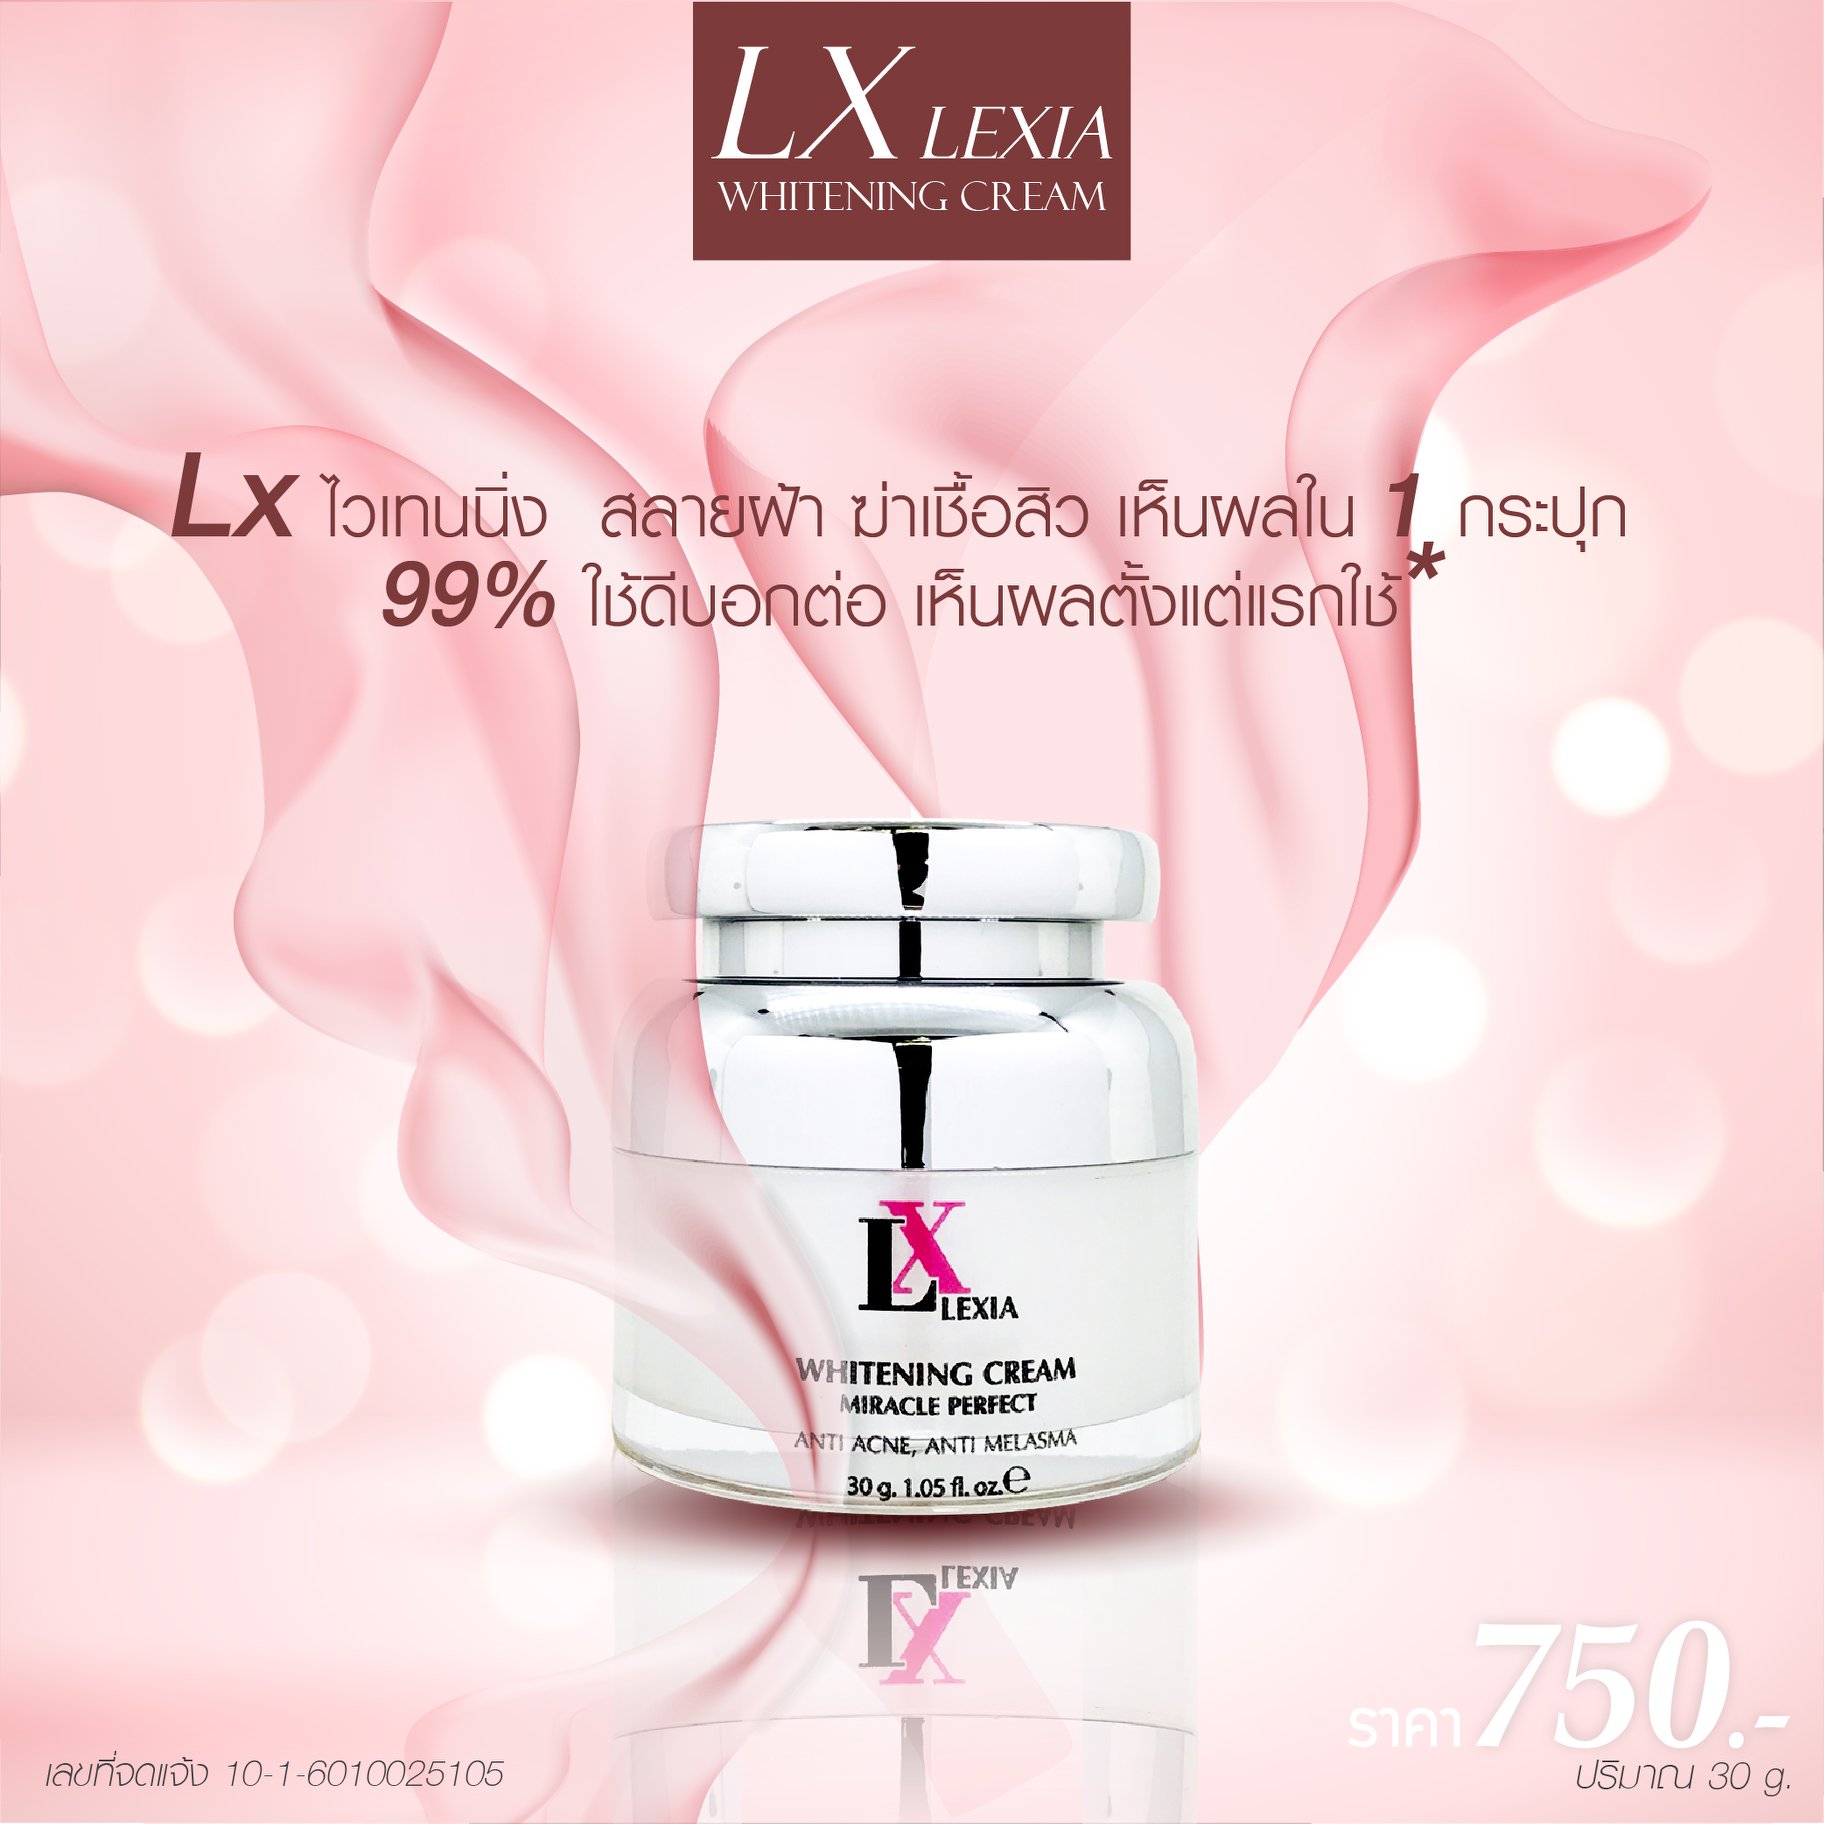 LX lexia Whitening Cream